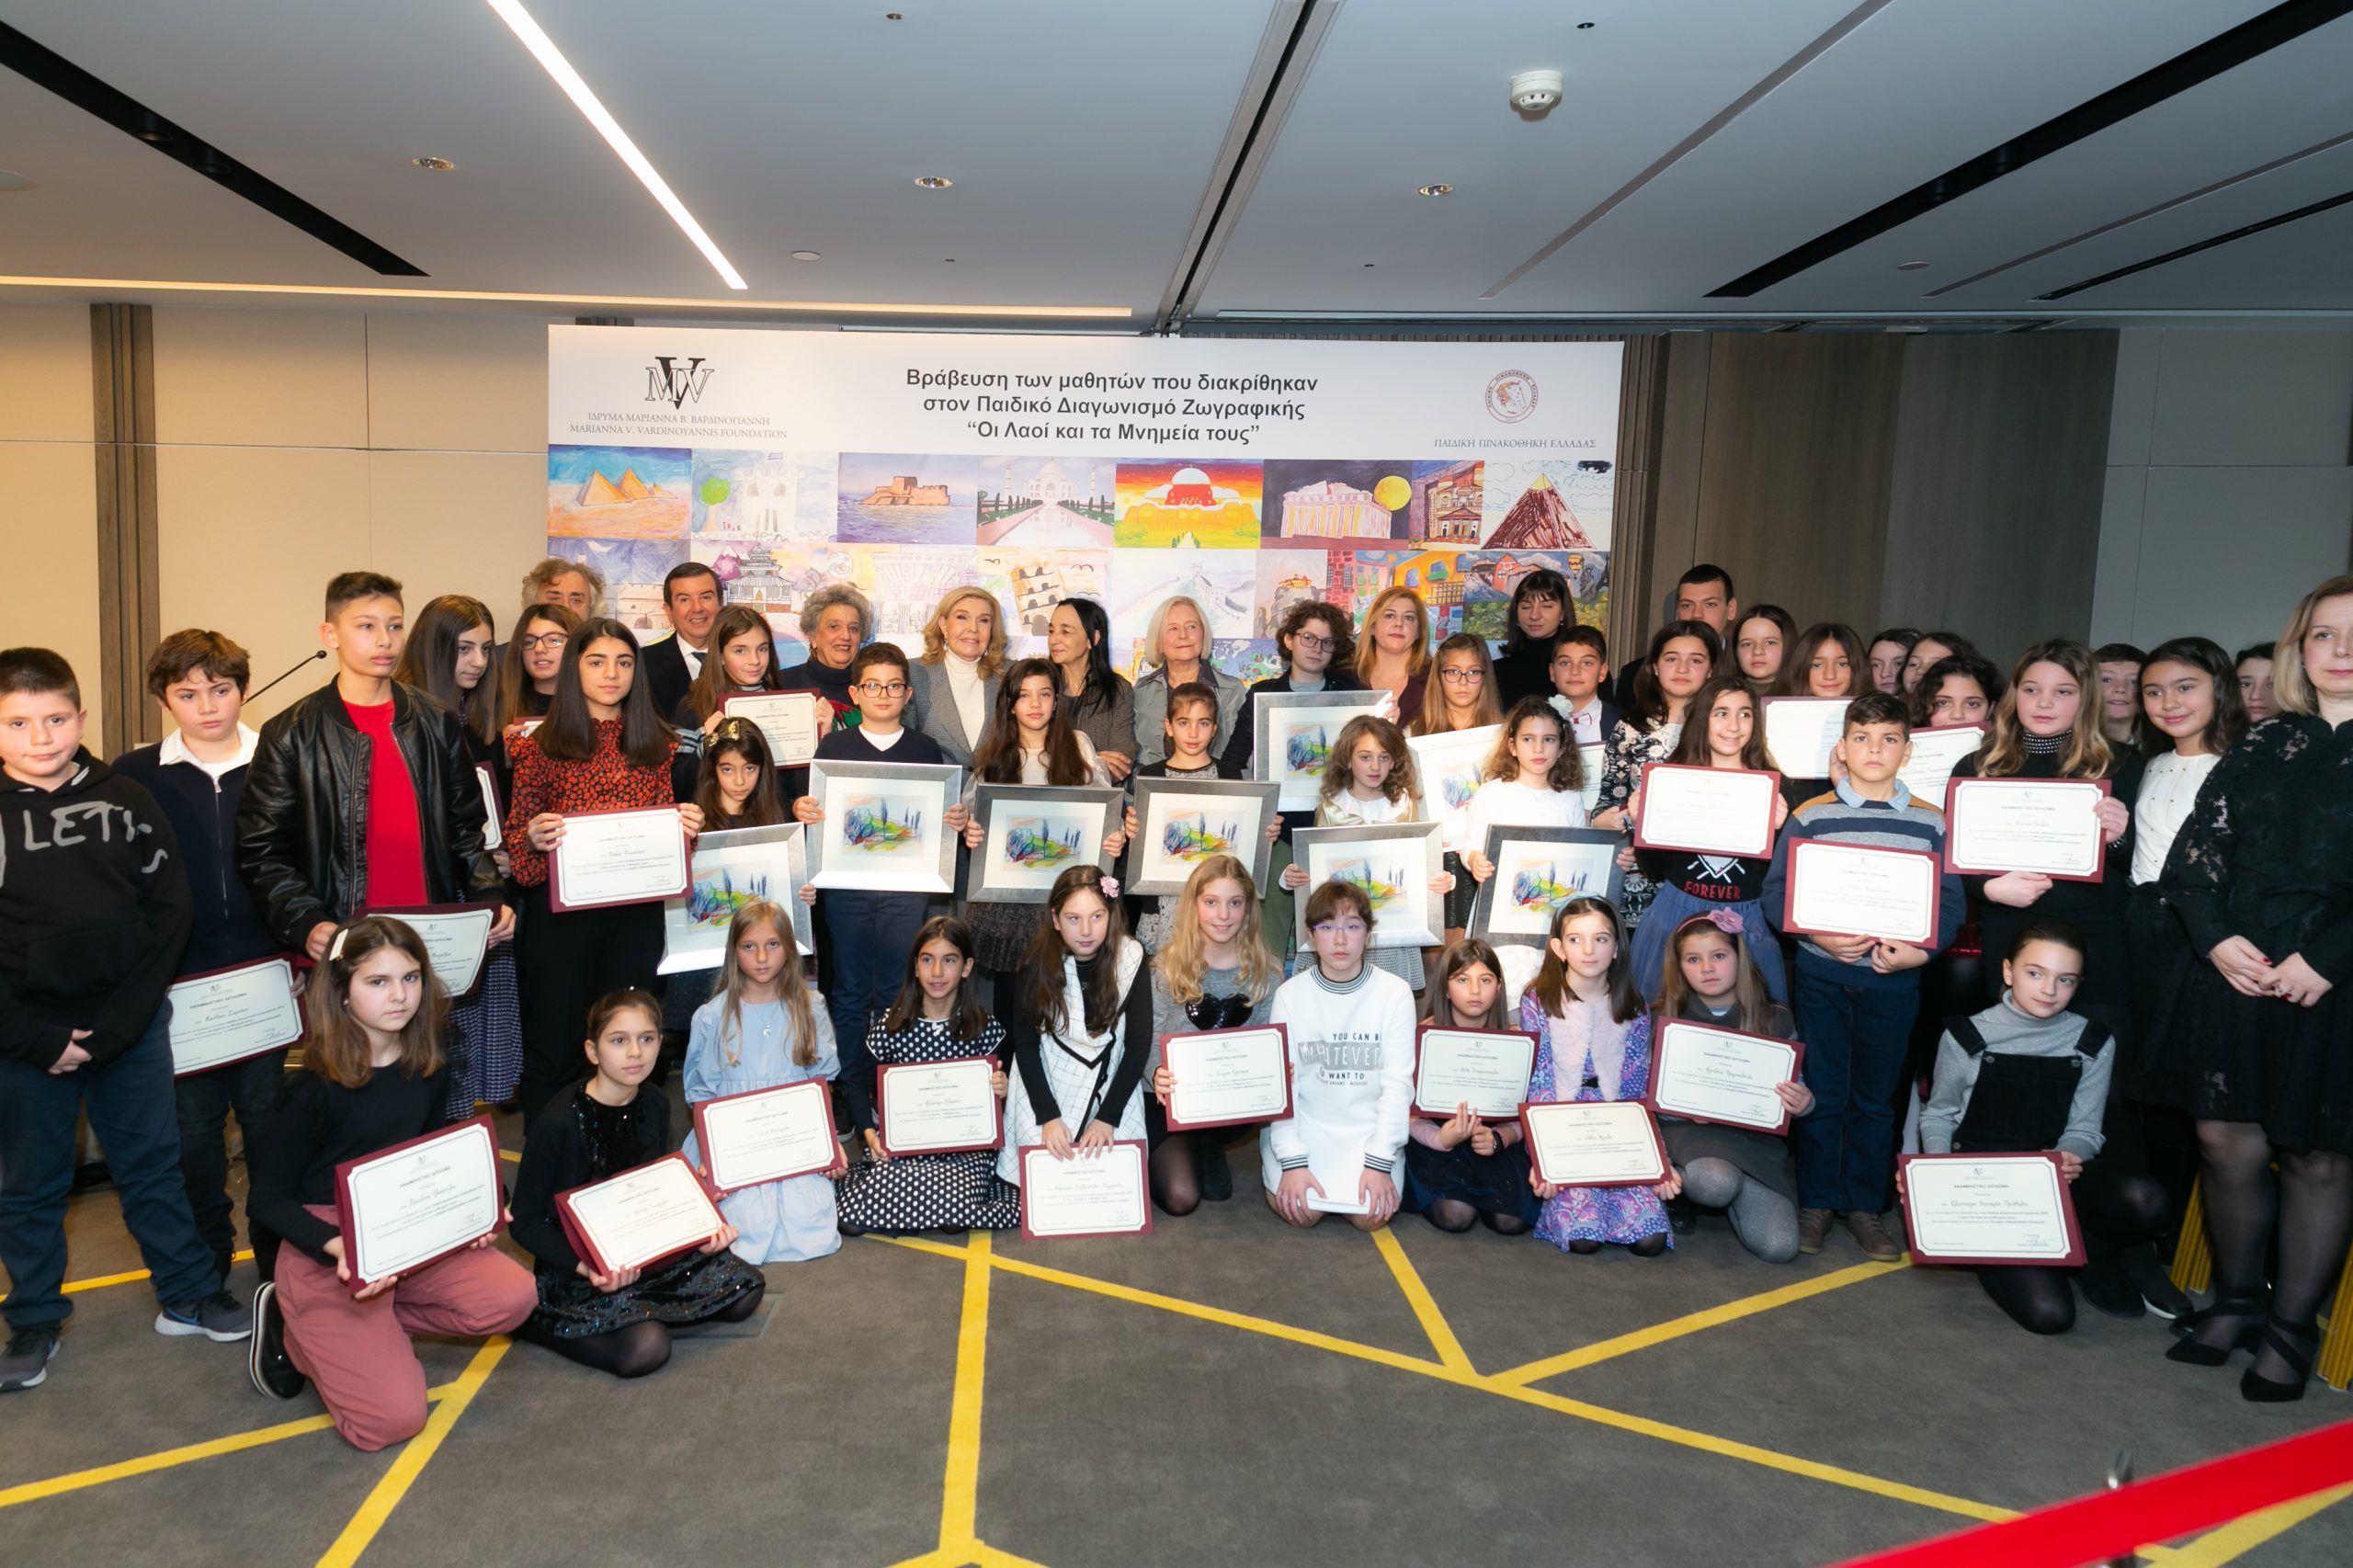 Πραγματοποιήθηκε η απονομή των Βραβείων Μαθητικού Διαγωνισμού Ζωγραφικής 2019 από το Ίδρυμα «Μαριάννα Β. Βαρδινογιάννη»